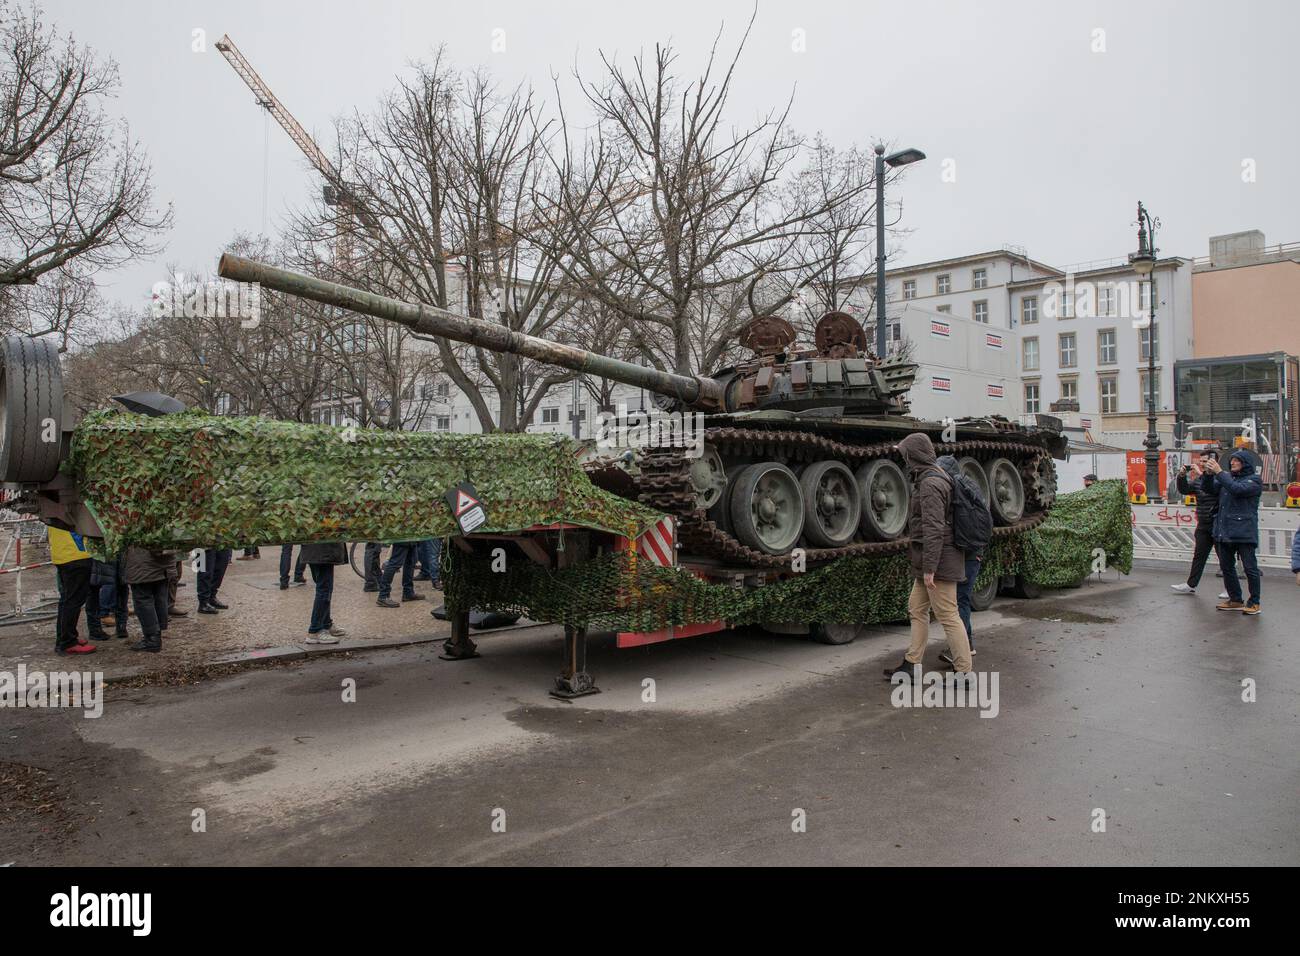 Berlin, Allemagne. 24th févr. 2023. Un char russe T-72 détruit de la bataille de Kiev a été placé à l'extérieur de l'ambassade de Russie à Berlin comme un mémorial contre la guerre, marquant ainsi l'anniversaire de l'invasion russe de l'Ukraine. Le char apporté à Berlin depuis un musée militaire de Kiev restera exposé pendant quelques jours. Les organisateurs de l'initiative ont déclaré que le char sert de rappel aux atrocités commises par l'armée russe et ''pour remettre leur malbouffe devant leur porte.'' Toutefois, l'installation a fait l'objet d'un long différend et a exigé une ordonnance du tribunal. (CRED Banque D'Images